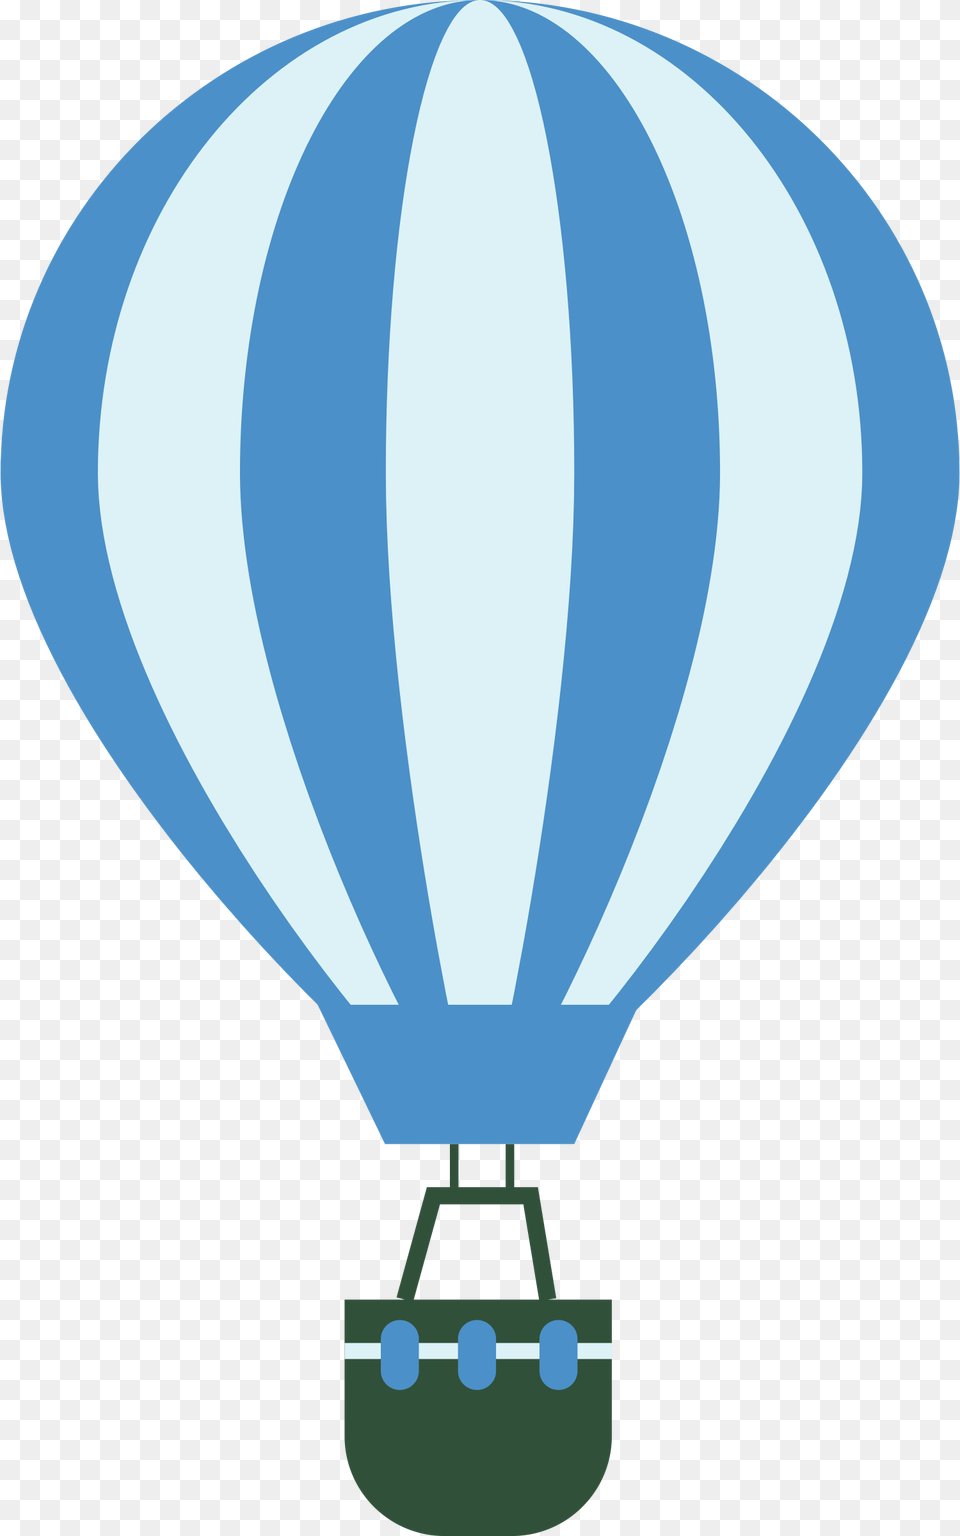 Clipart, Aircraft, Hot Air Balloon, Transportation, Vehicle Png Image